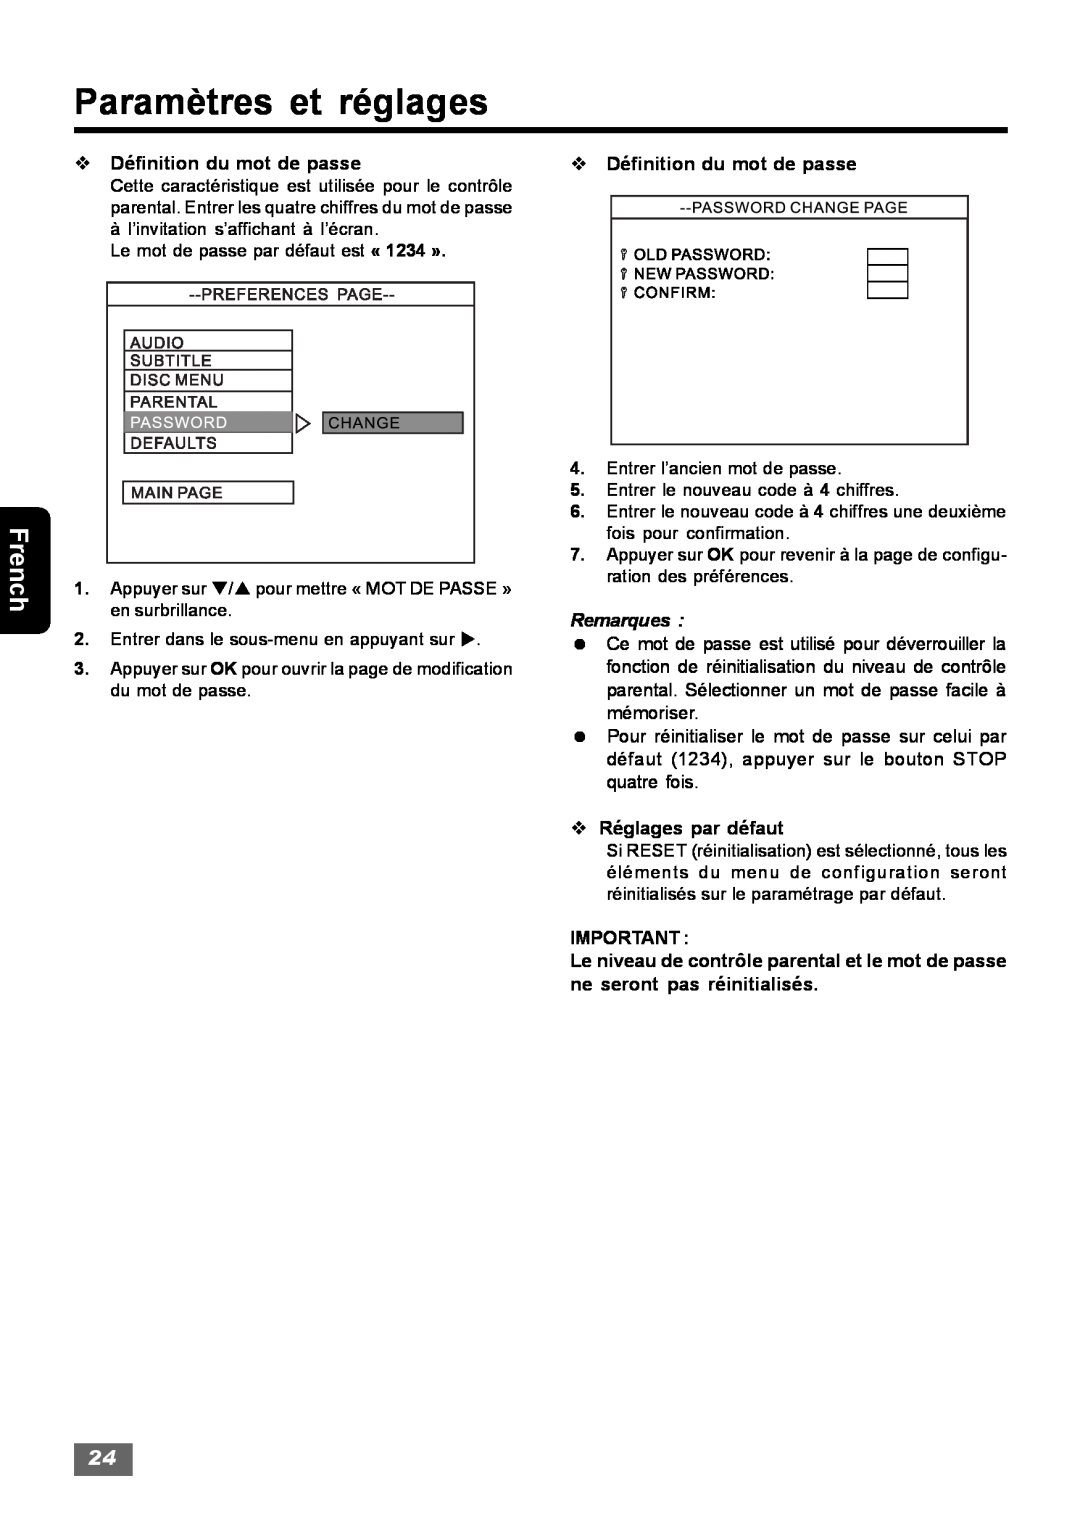 Insignia IS-HTIB102731 owner manual Paramètres et réglages, v Définition du mot de passe 